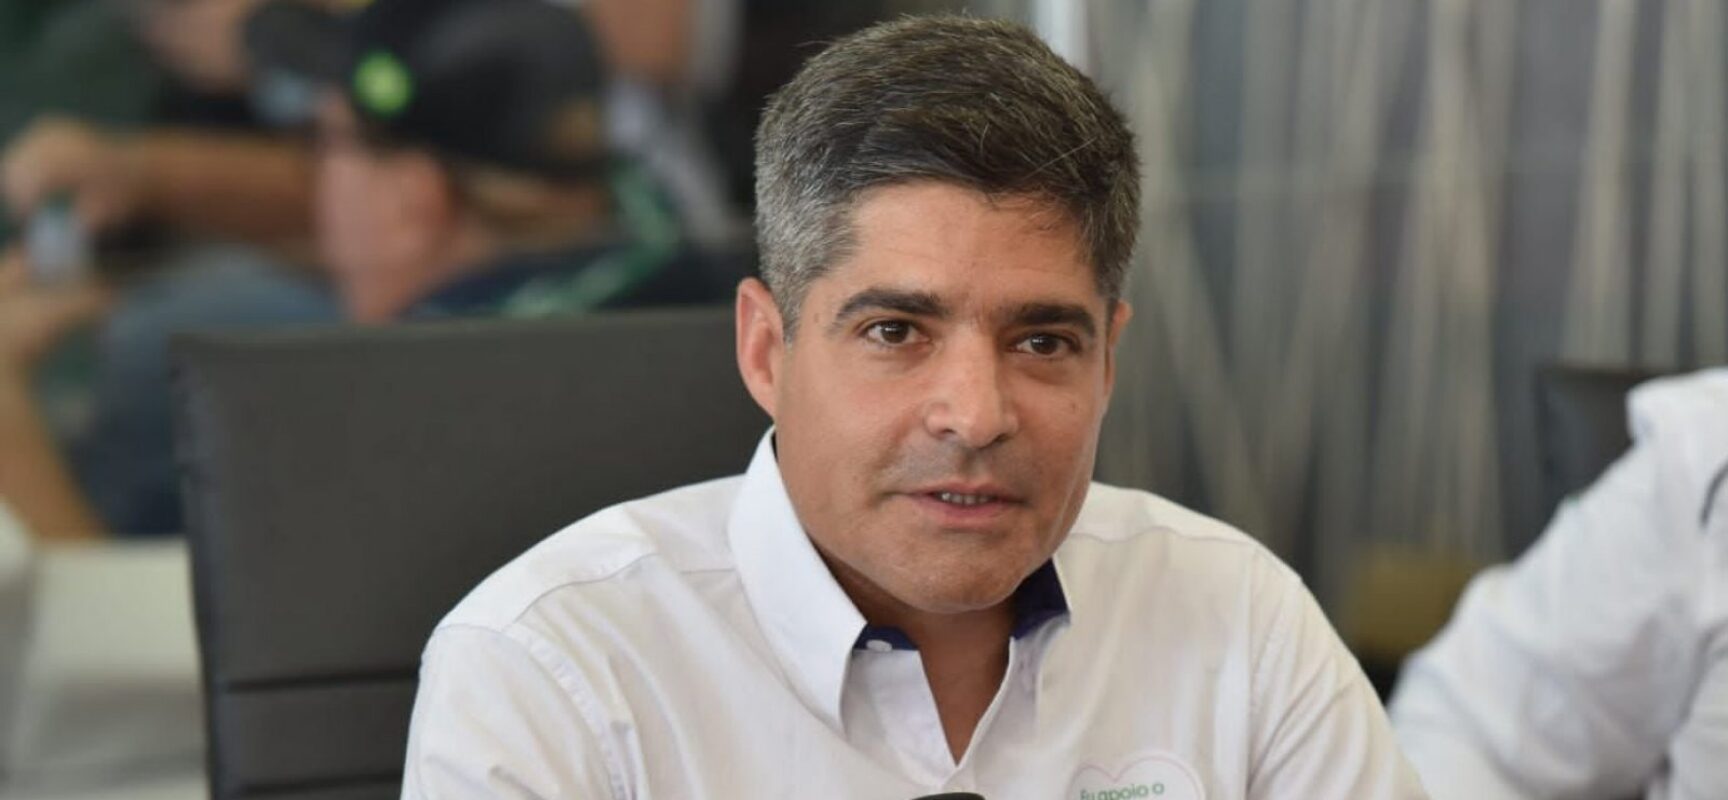 ACM Neto confirma data da convenção partidária na Boca do Rio